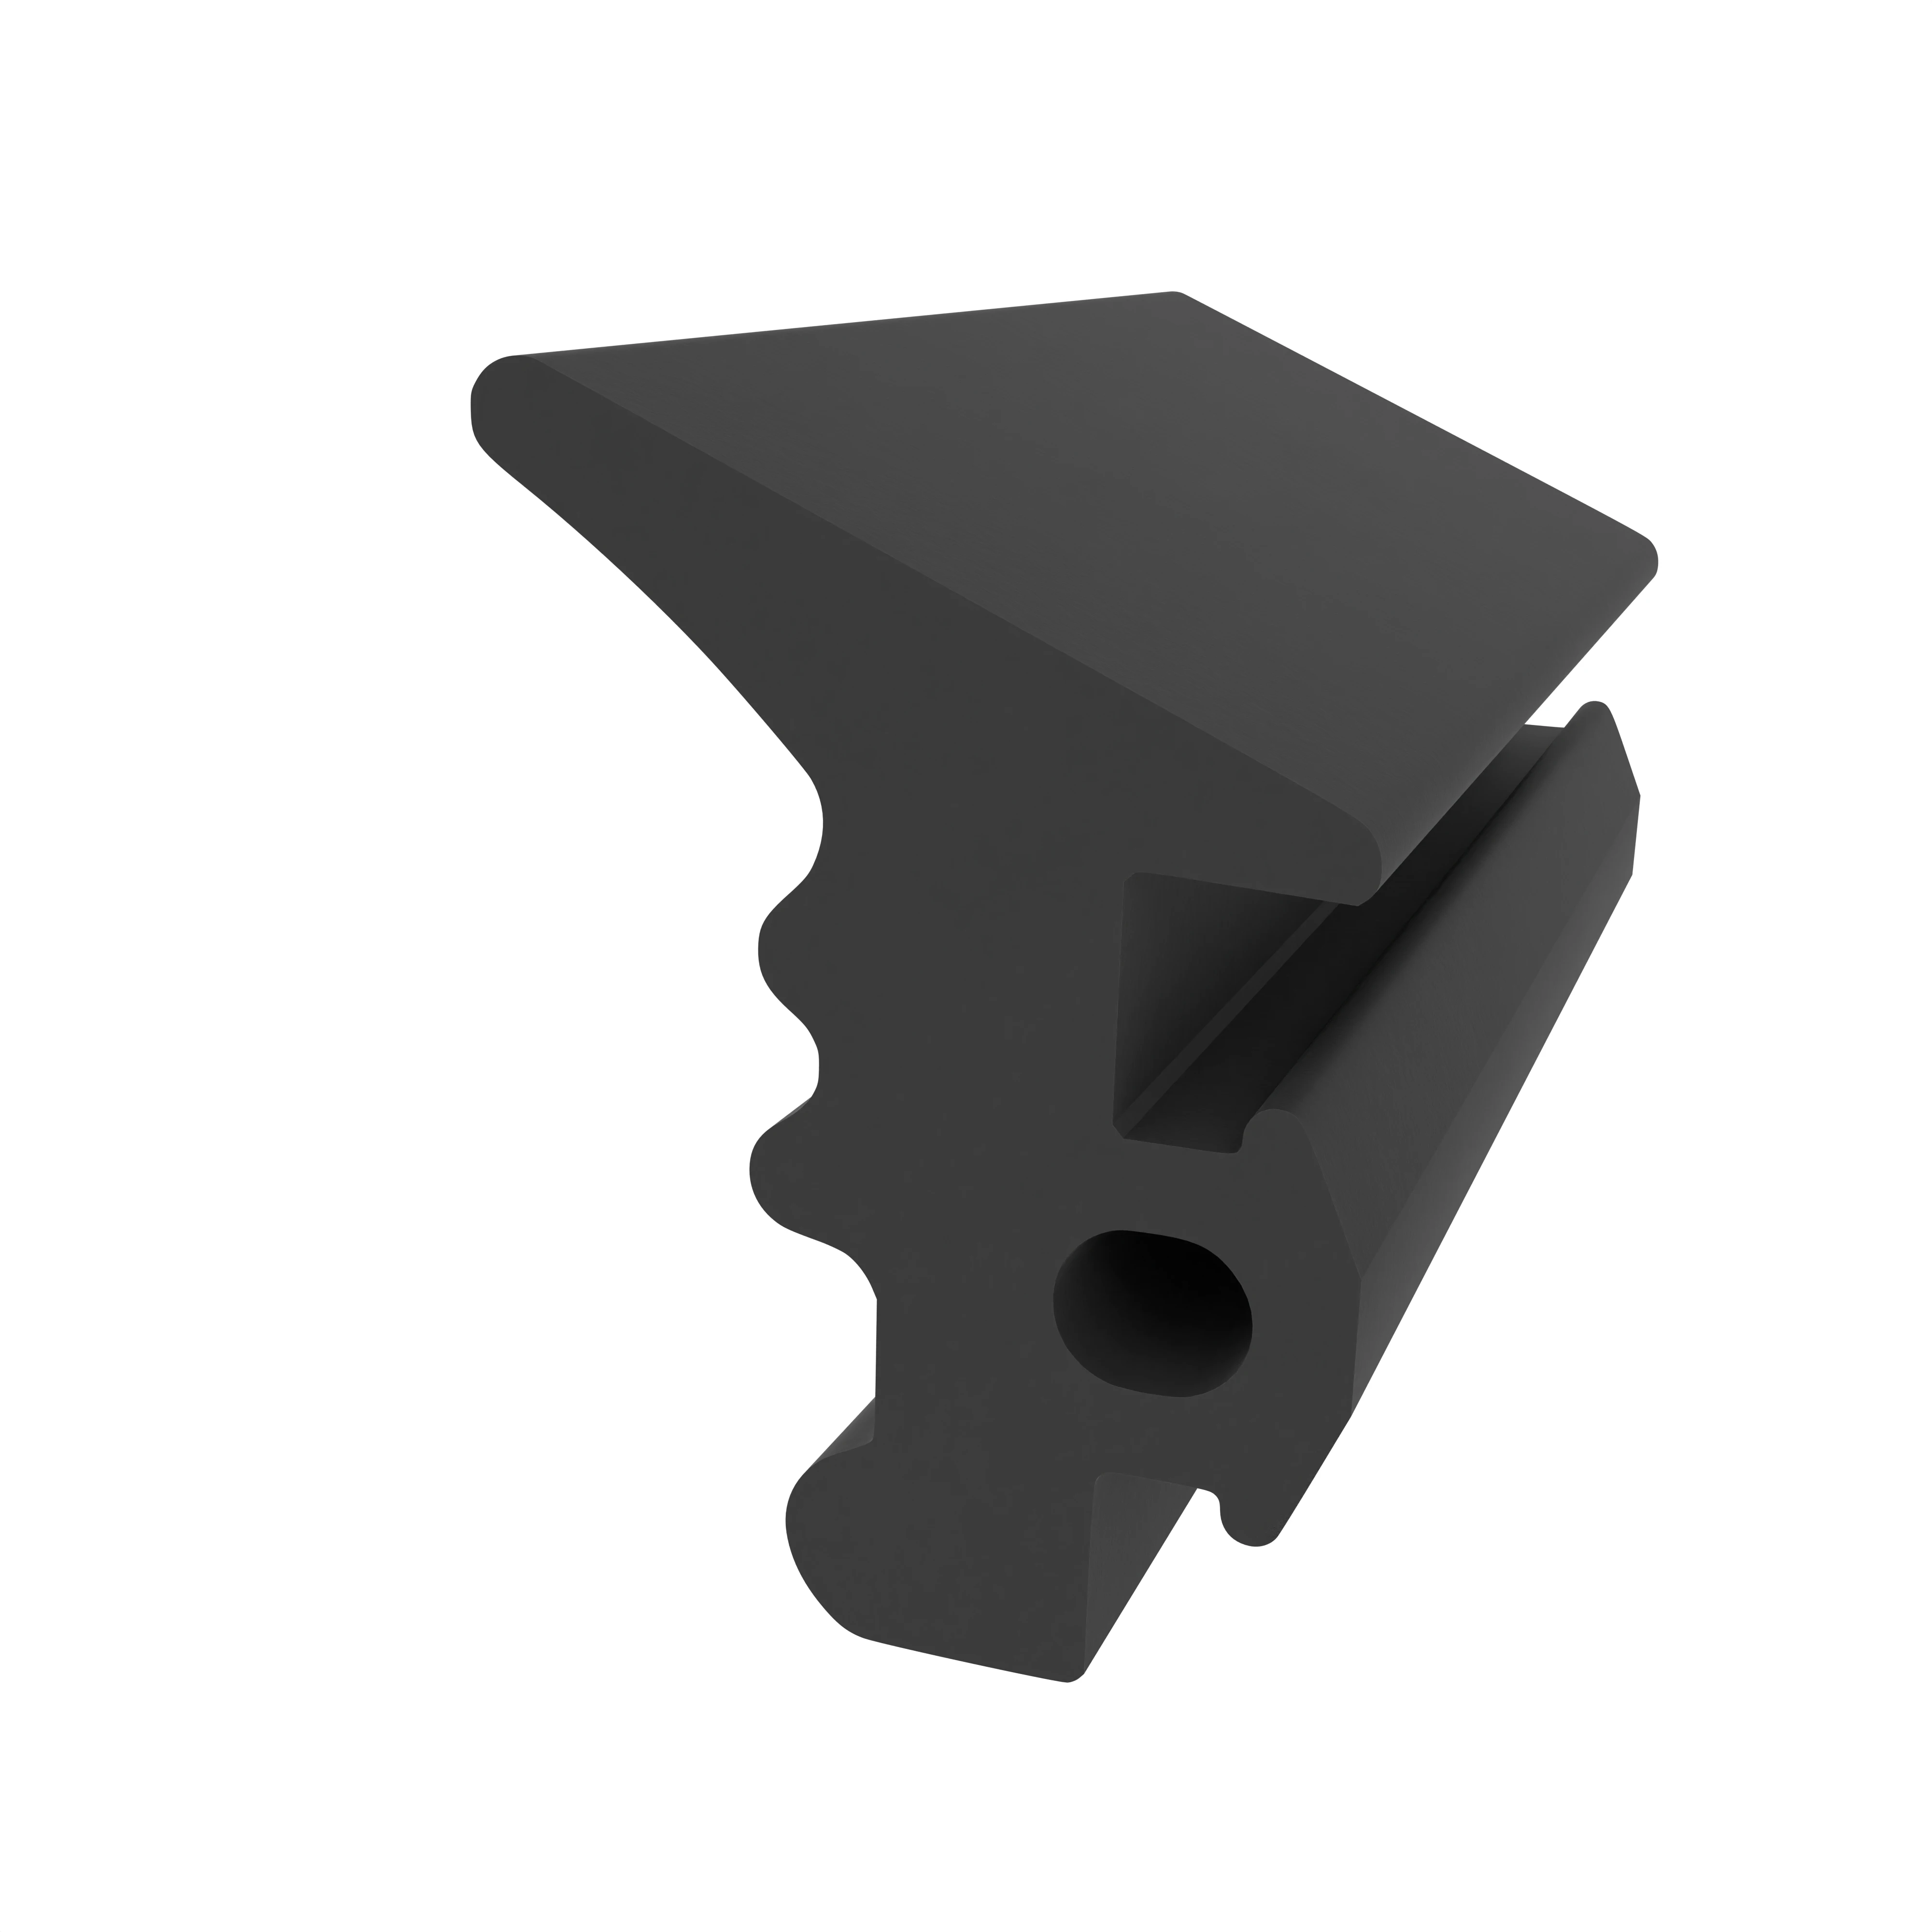 Verglasungsdichtung für Stahlzargen | 12 mm Höhe | Farbe: schwarz